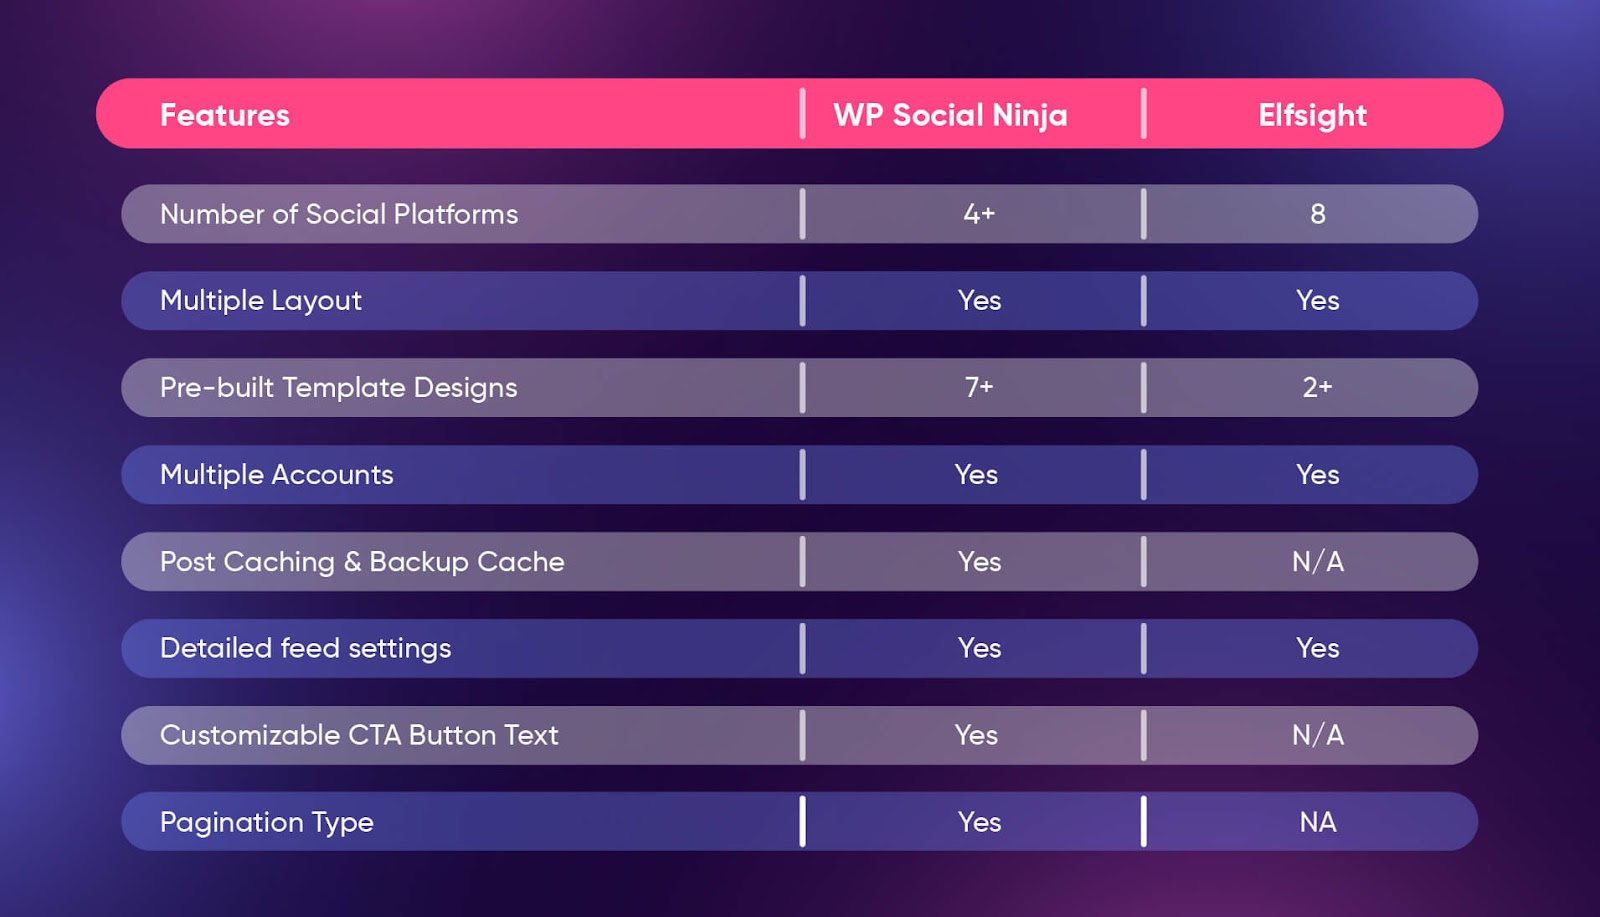 WP Social Ninja vs Elfsight popup settings features